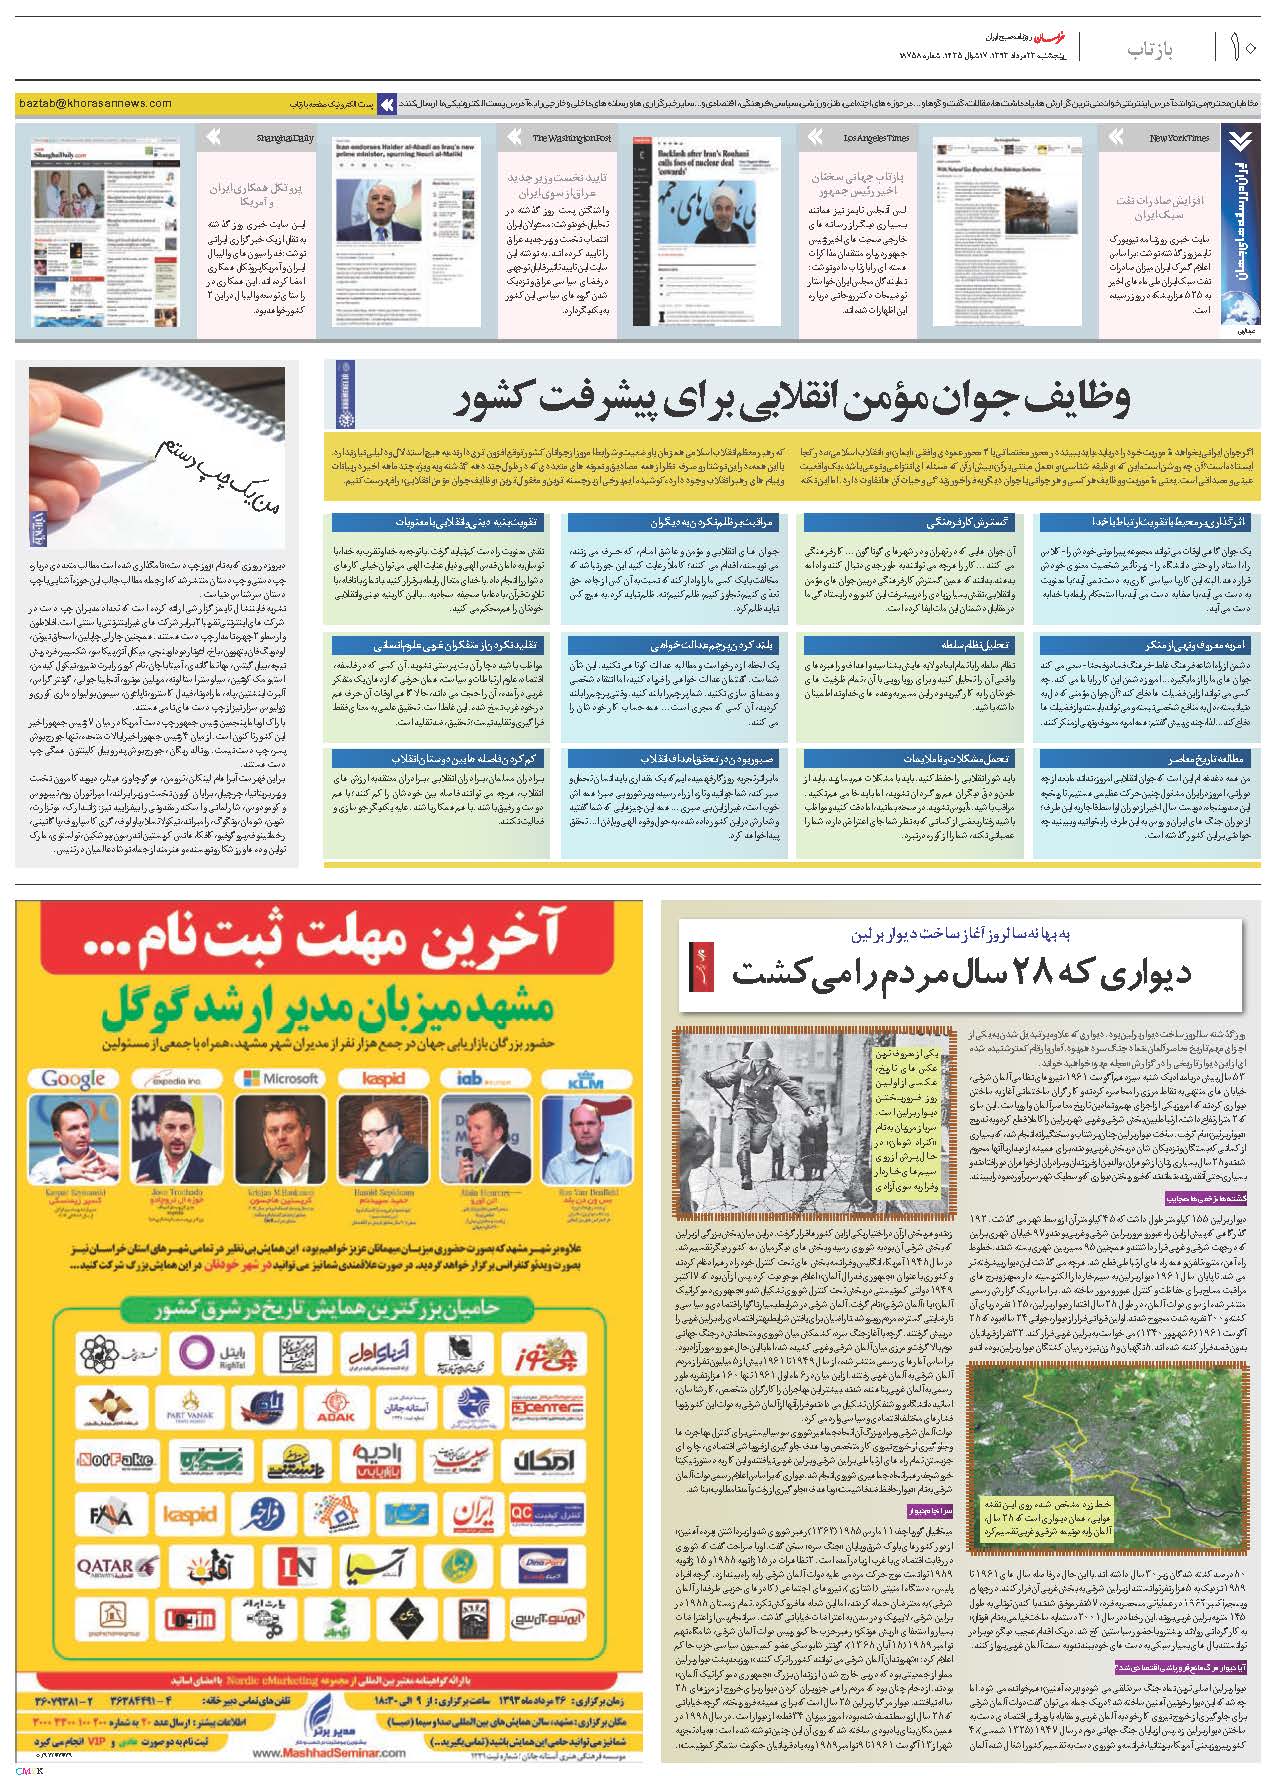 همایش بازاریابی اینترنتی در مشهد - علی خادم الرضا - کیمیا فکر بزرگ - آیا آنان که می دانند با آنان که نمی دانند برابرند؟